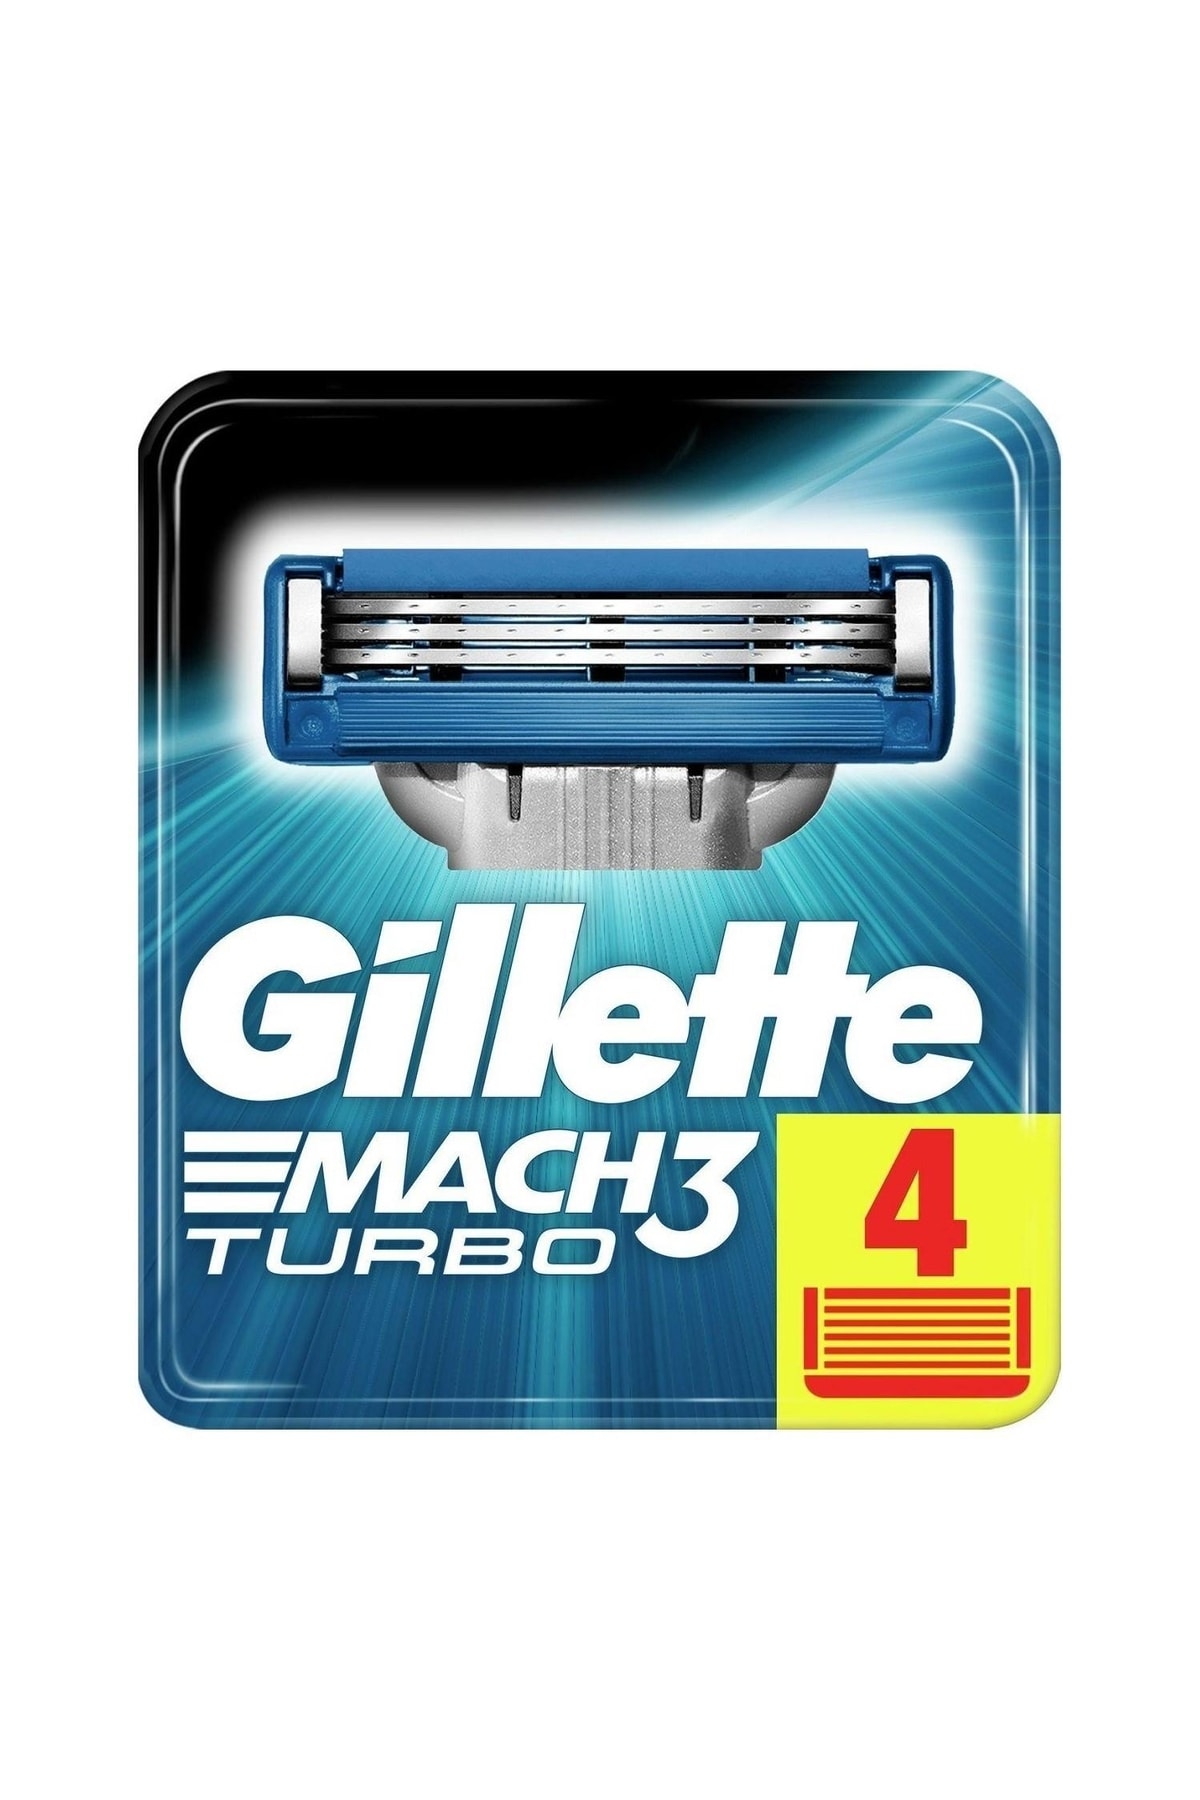 Gillette Mach3 turbo yedek tıraş bıçağı 4'lü